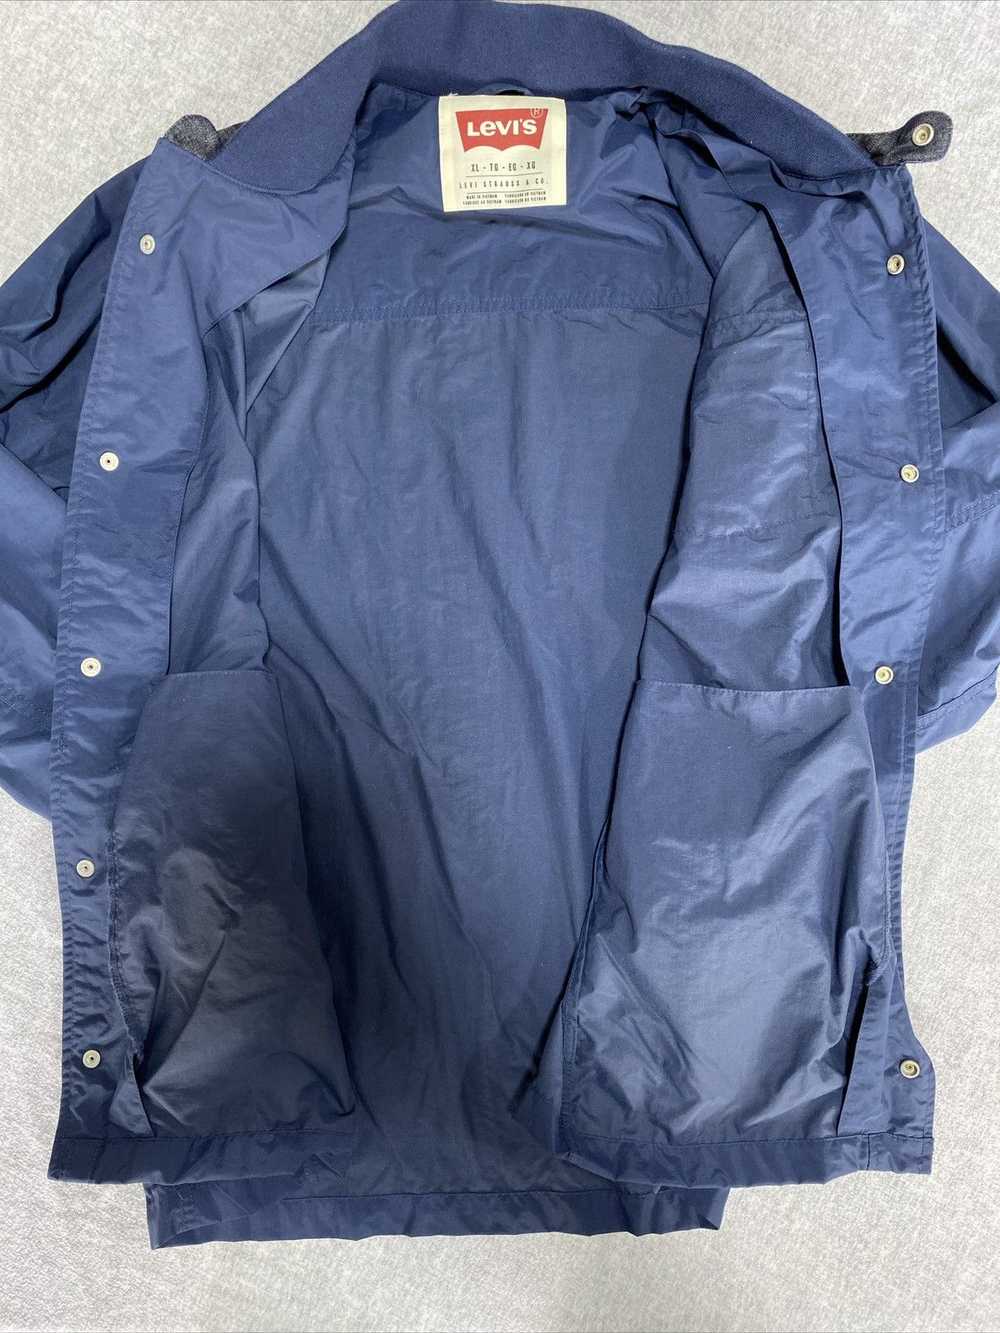 Levi's Levis Shacket Mens Extra Large Blue Jacket… - image 4